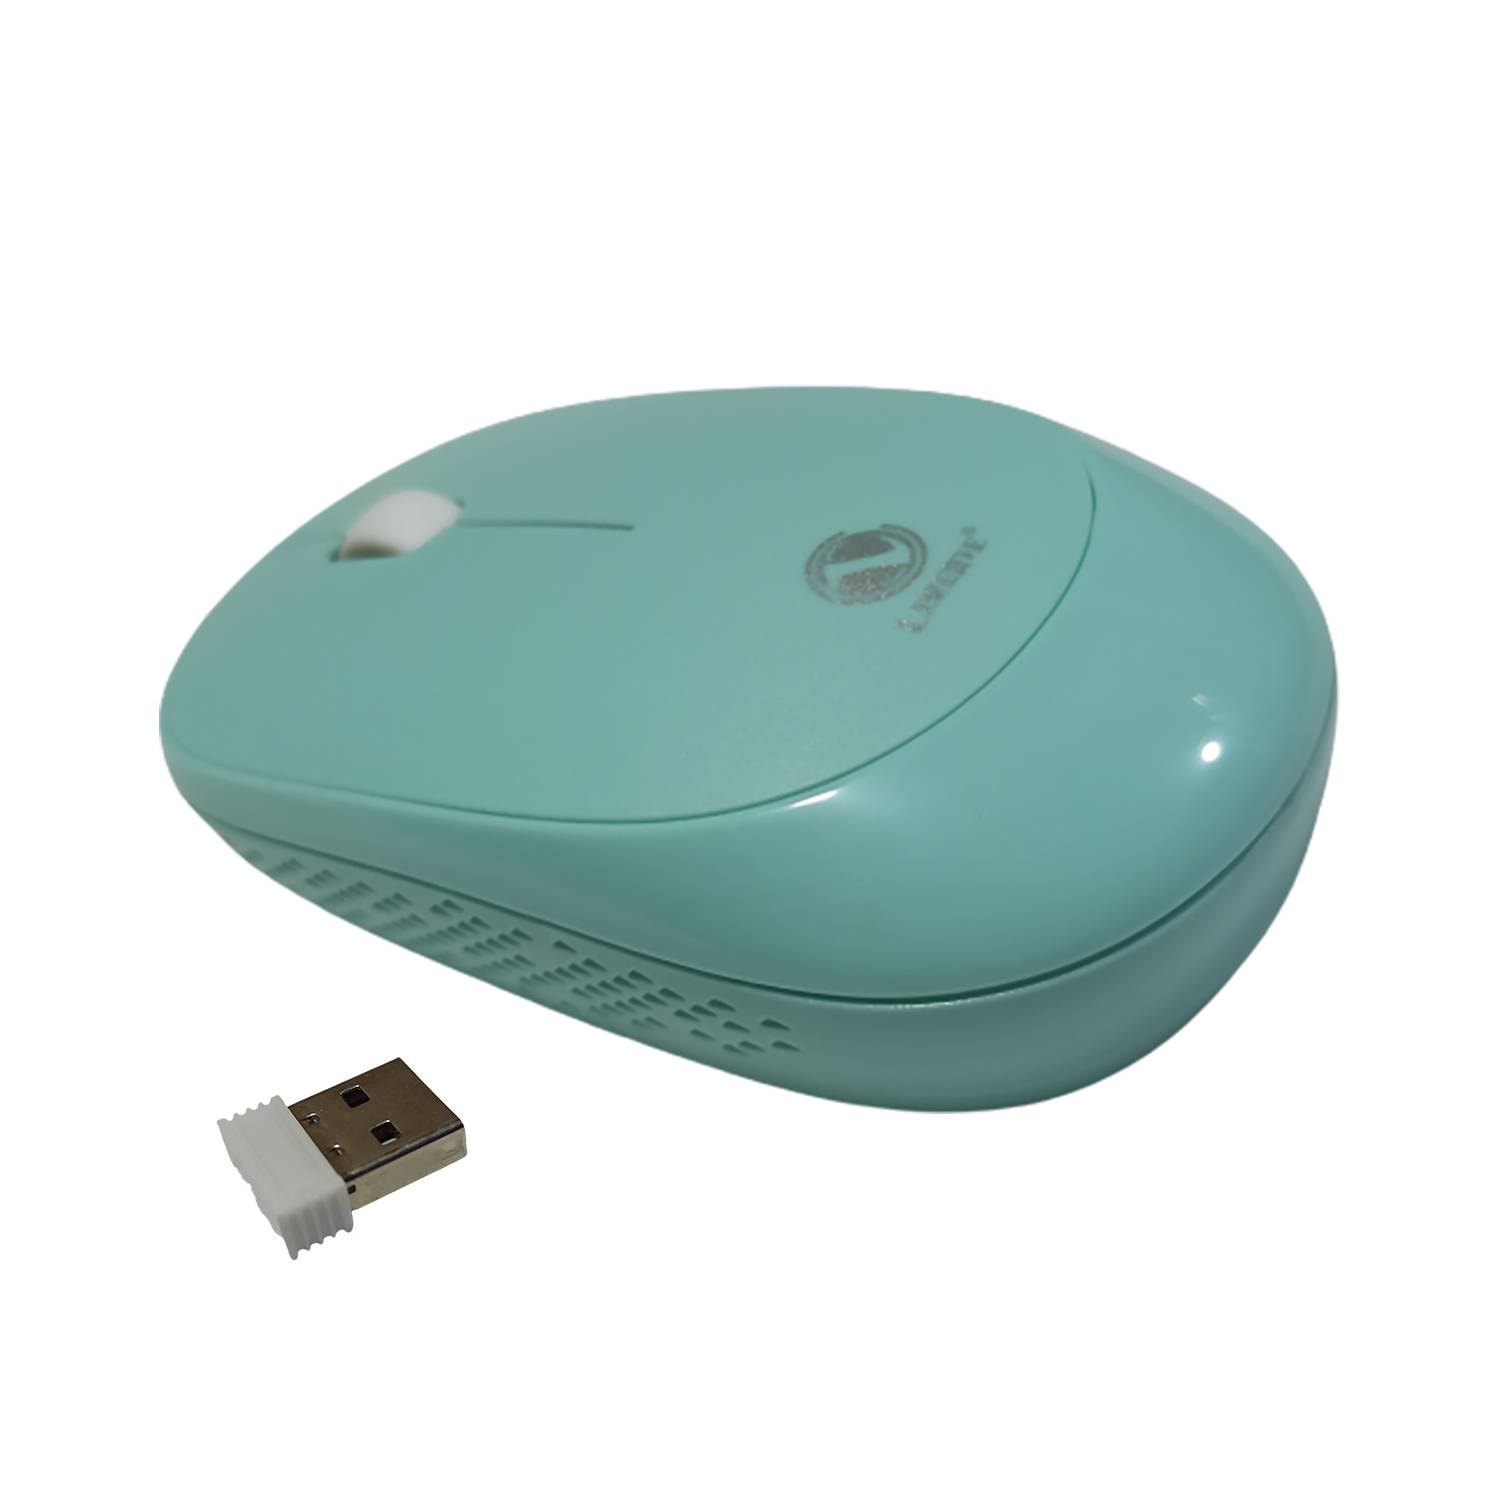 Mouse Inalambrico Wireless Bluetooth a pila - NITRON